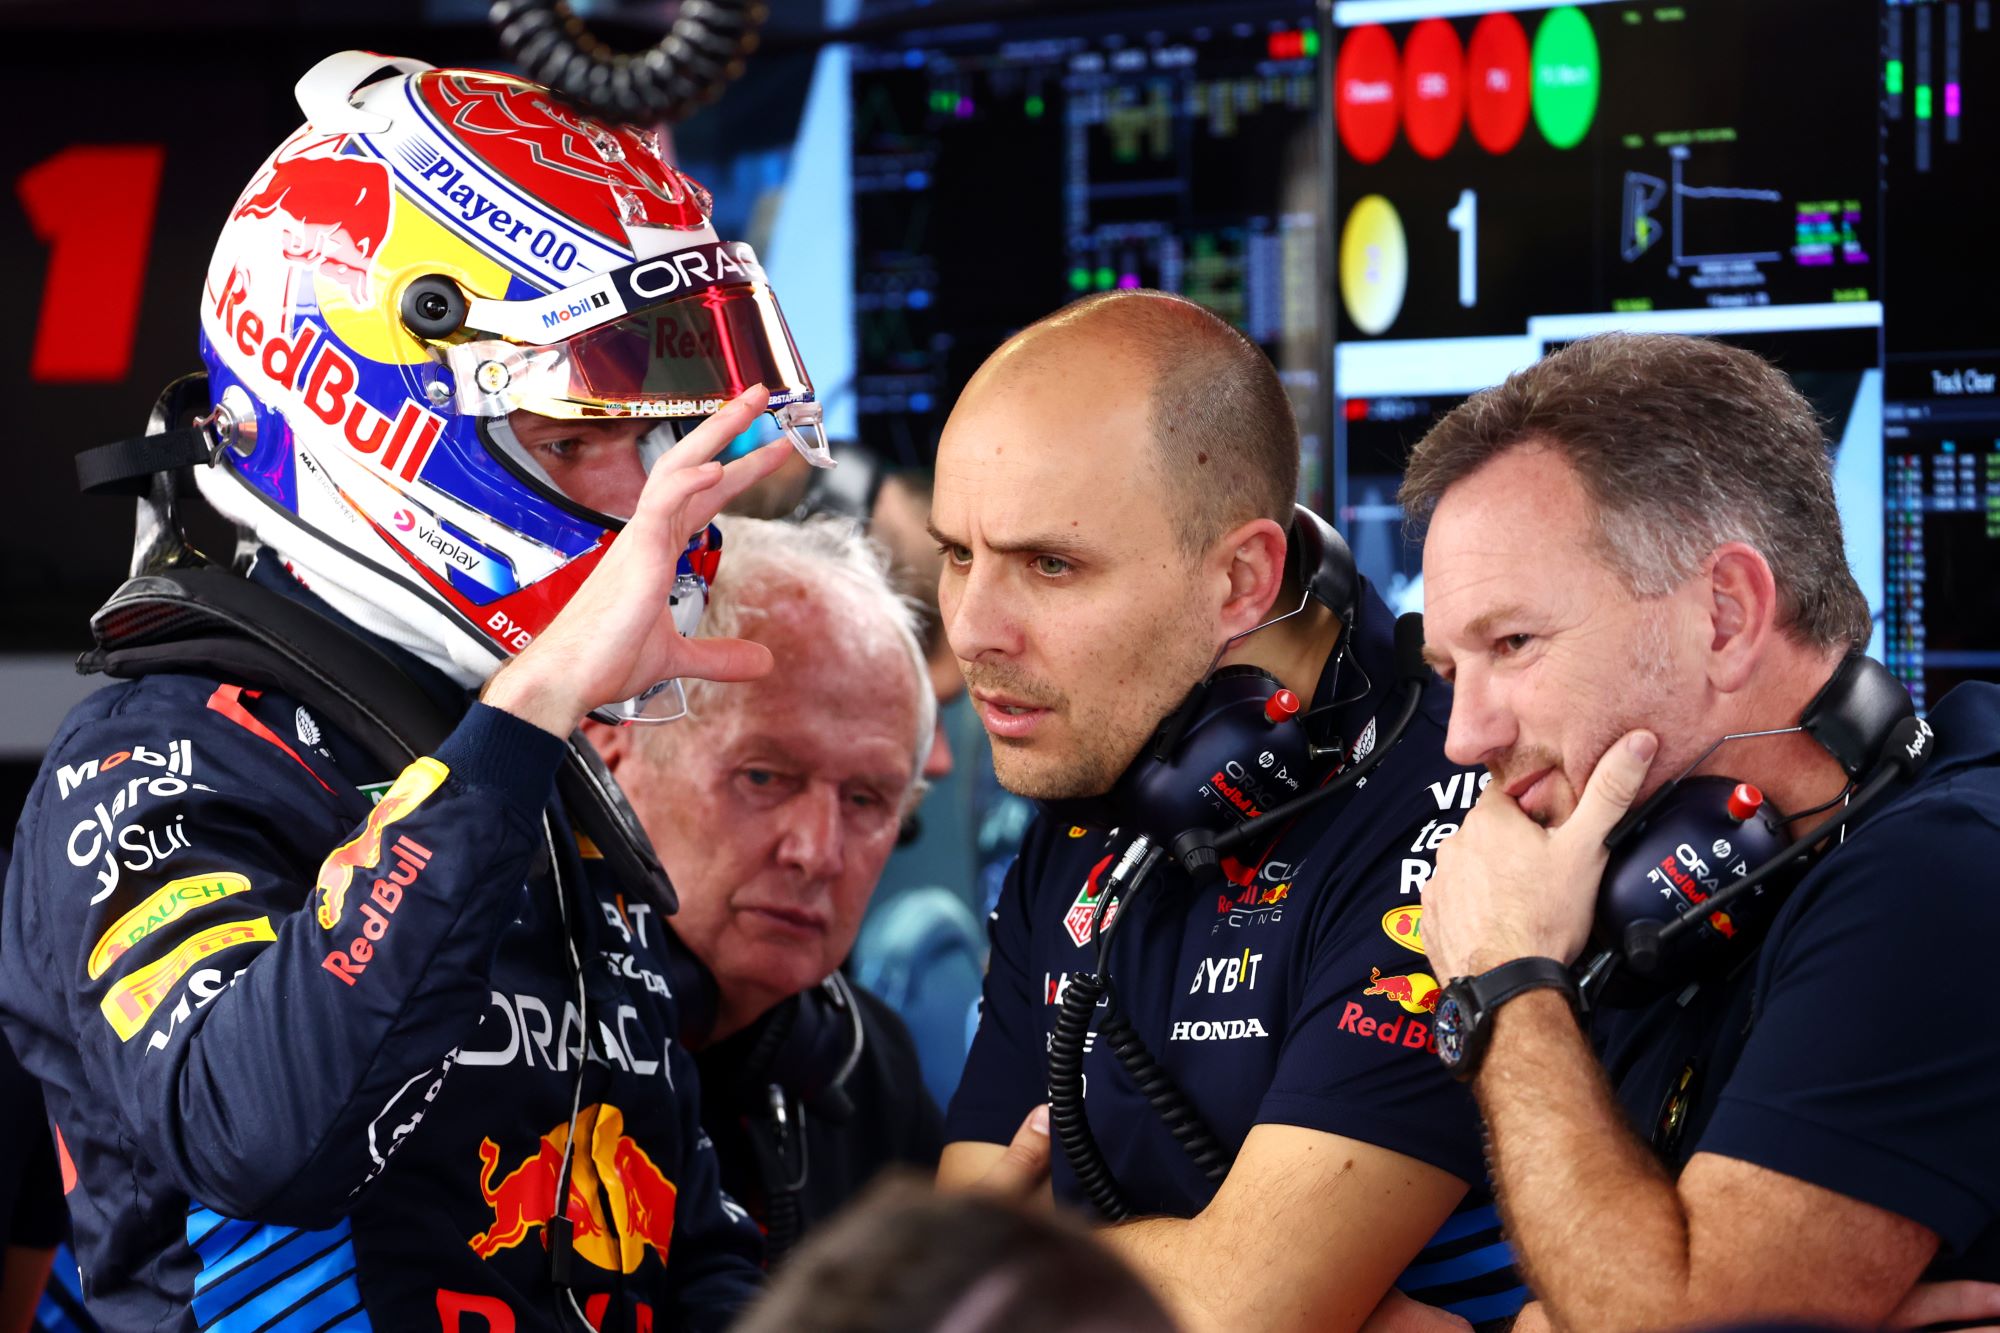 F1: Horner elogia postura de Verstappen após abandono na Austrália